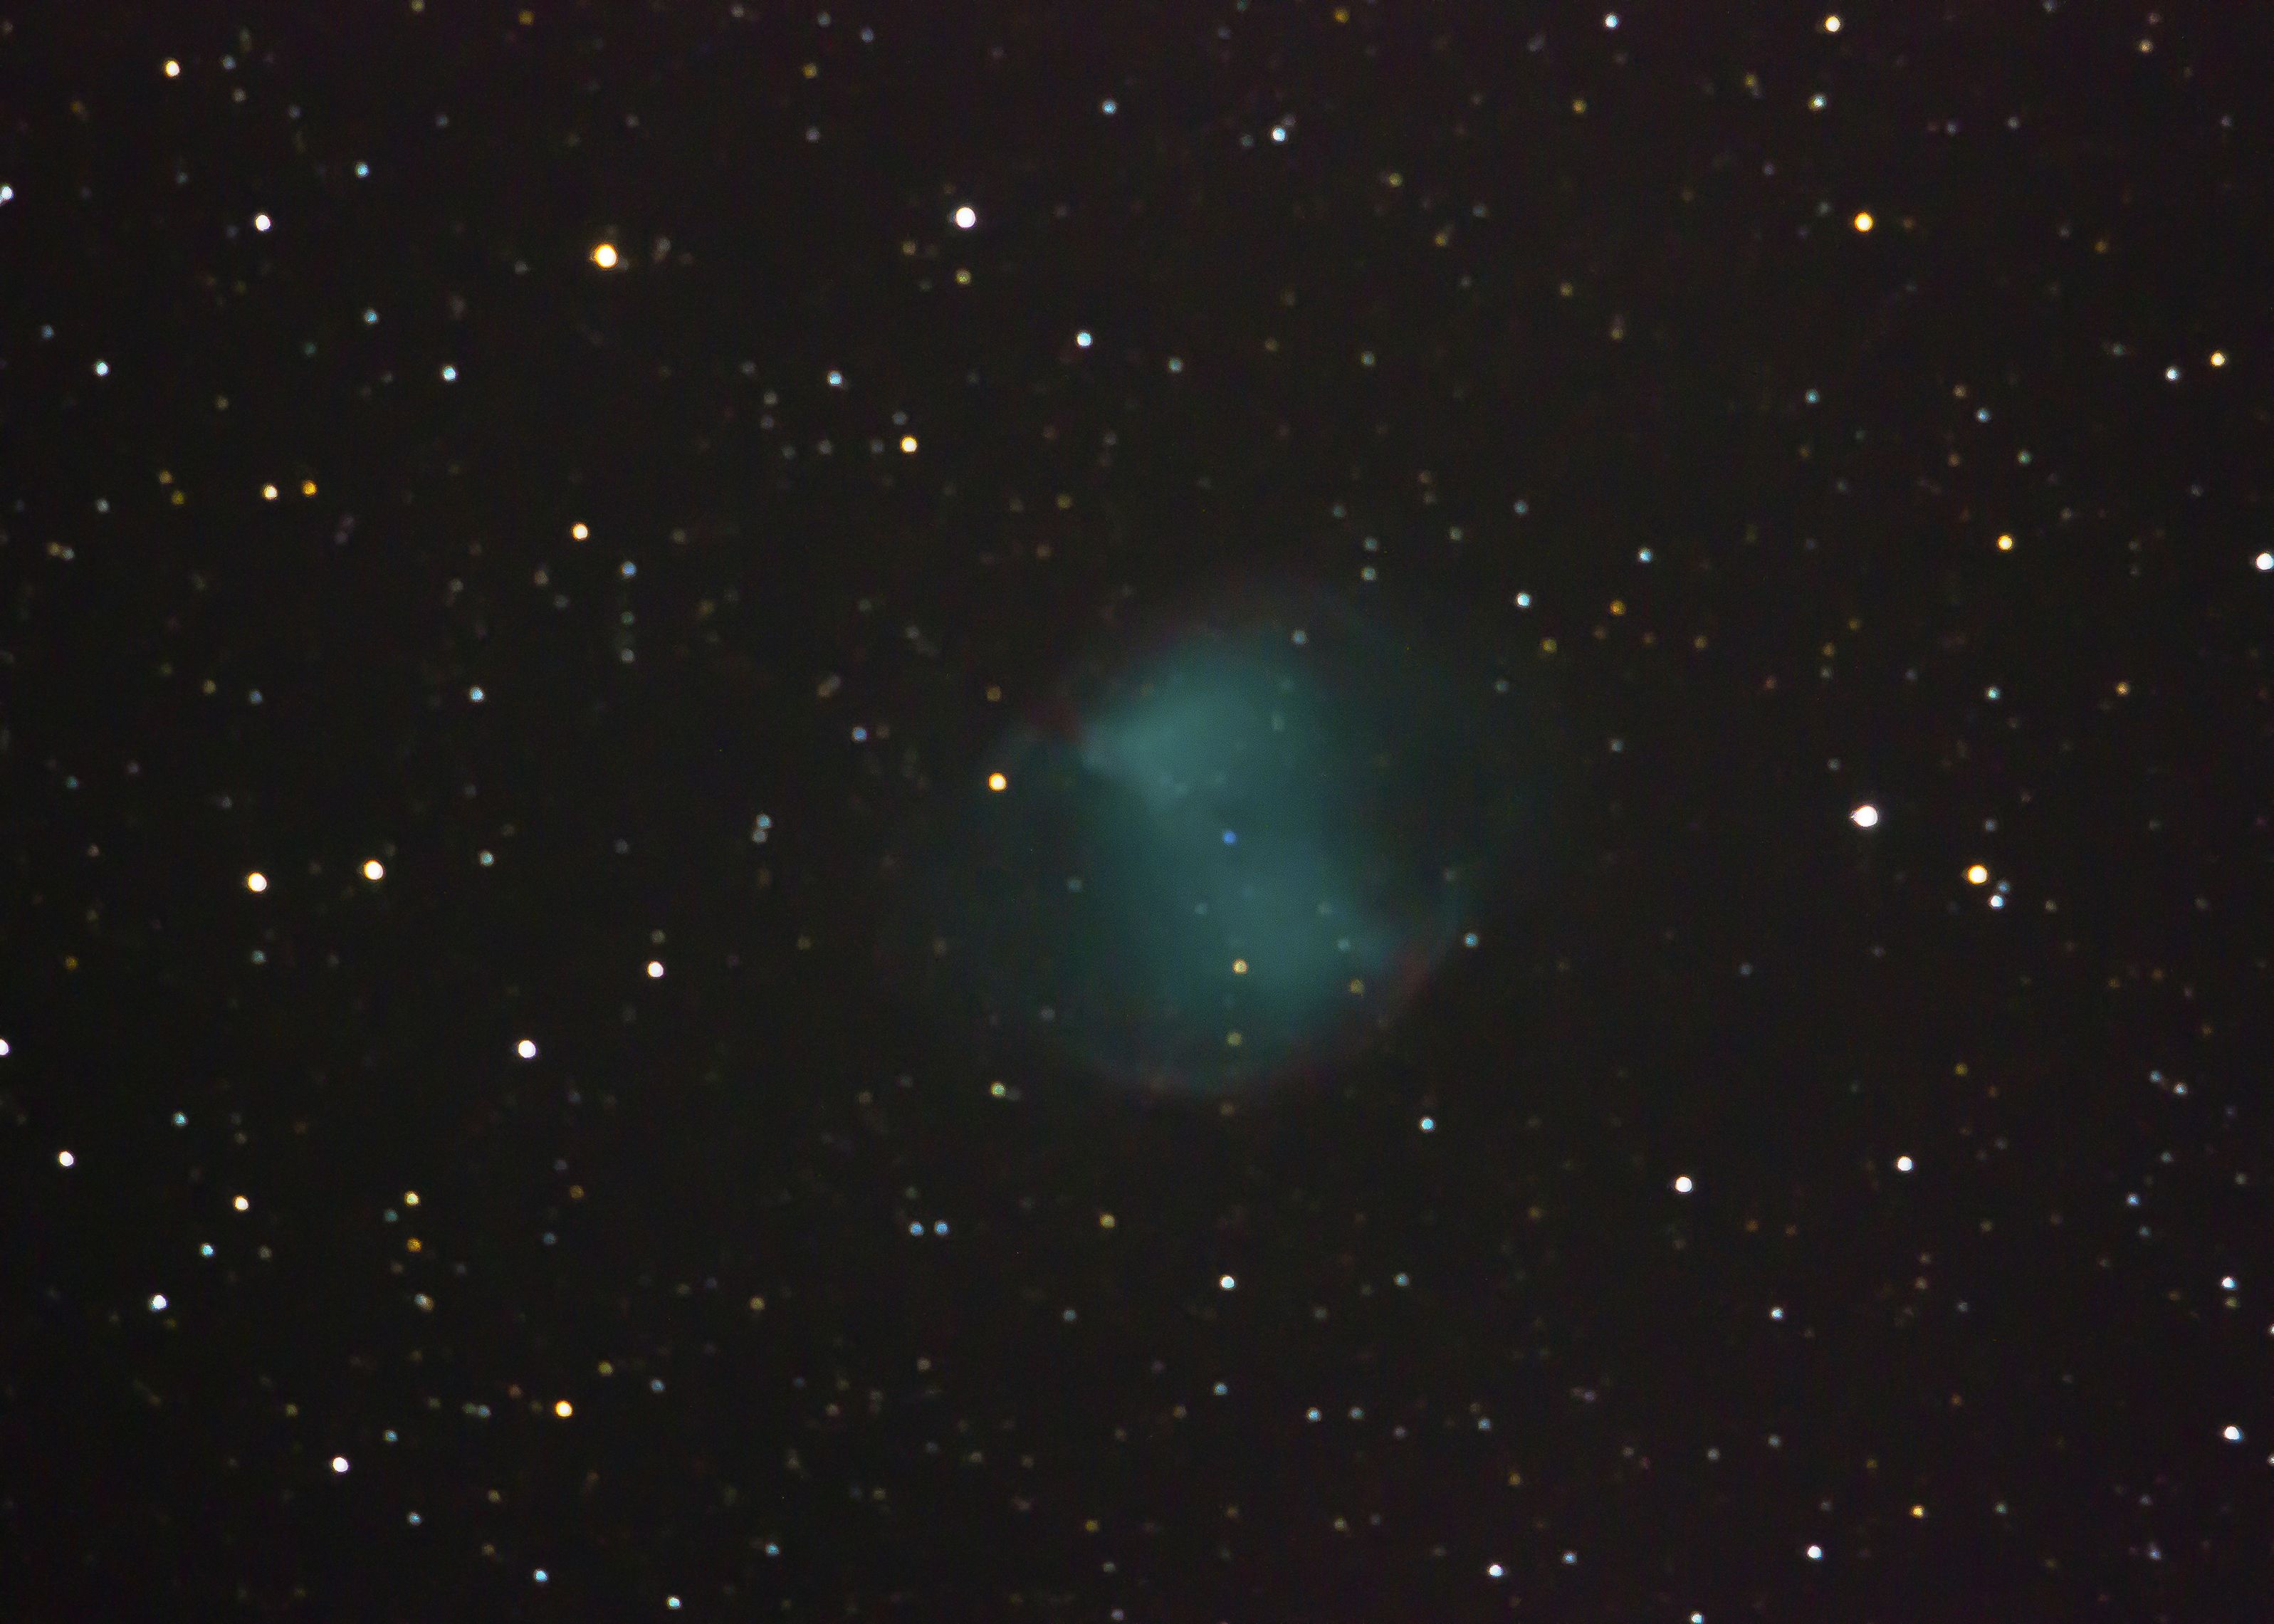 Dumbbell Nebula 9-13-13